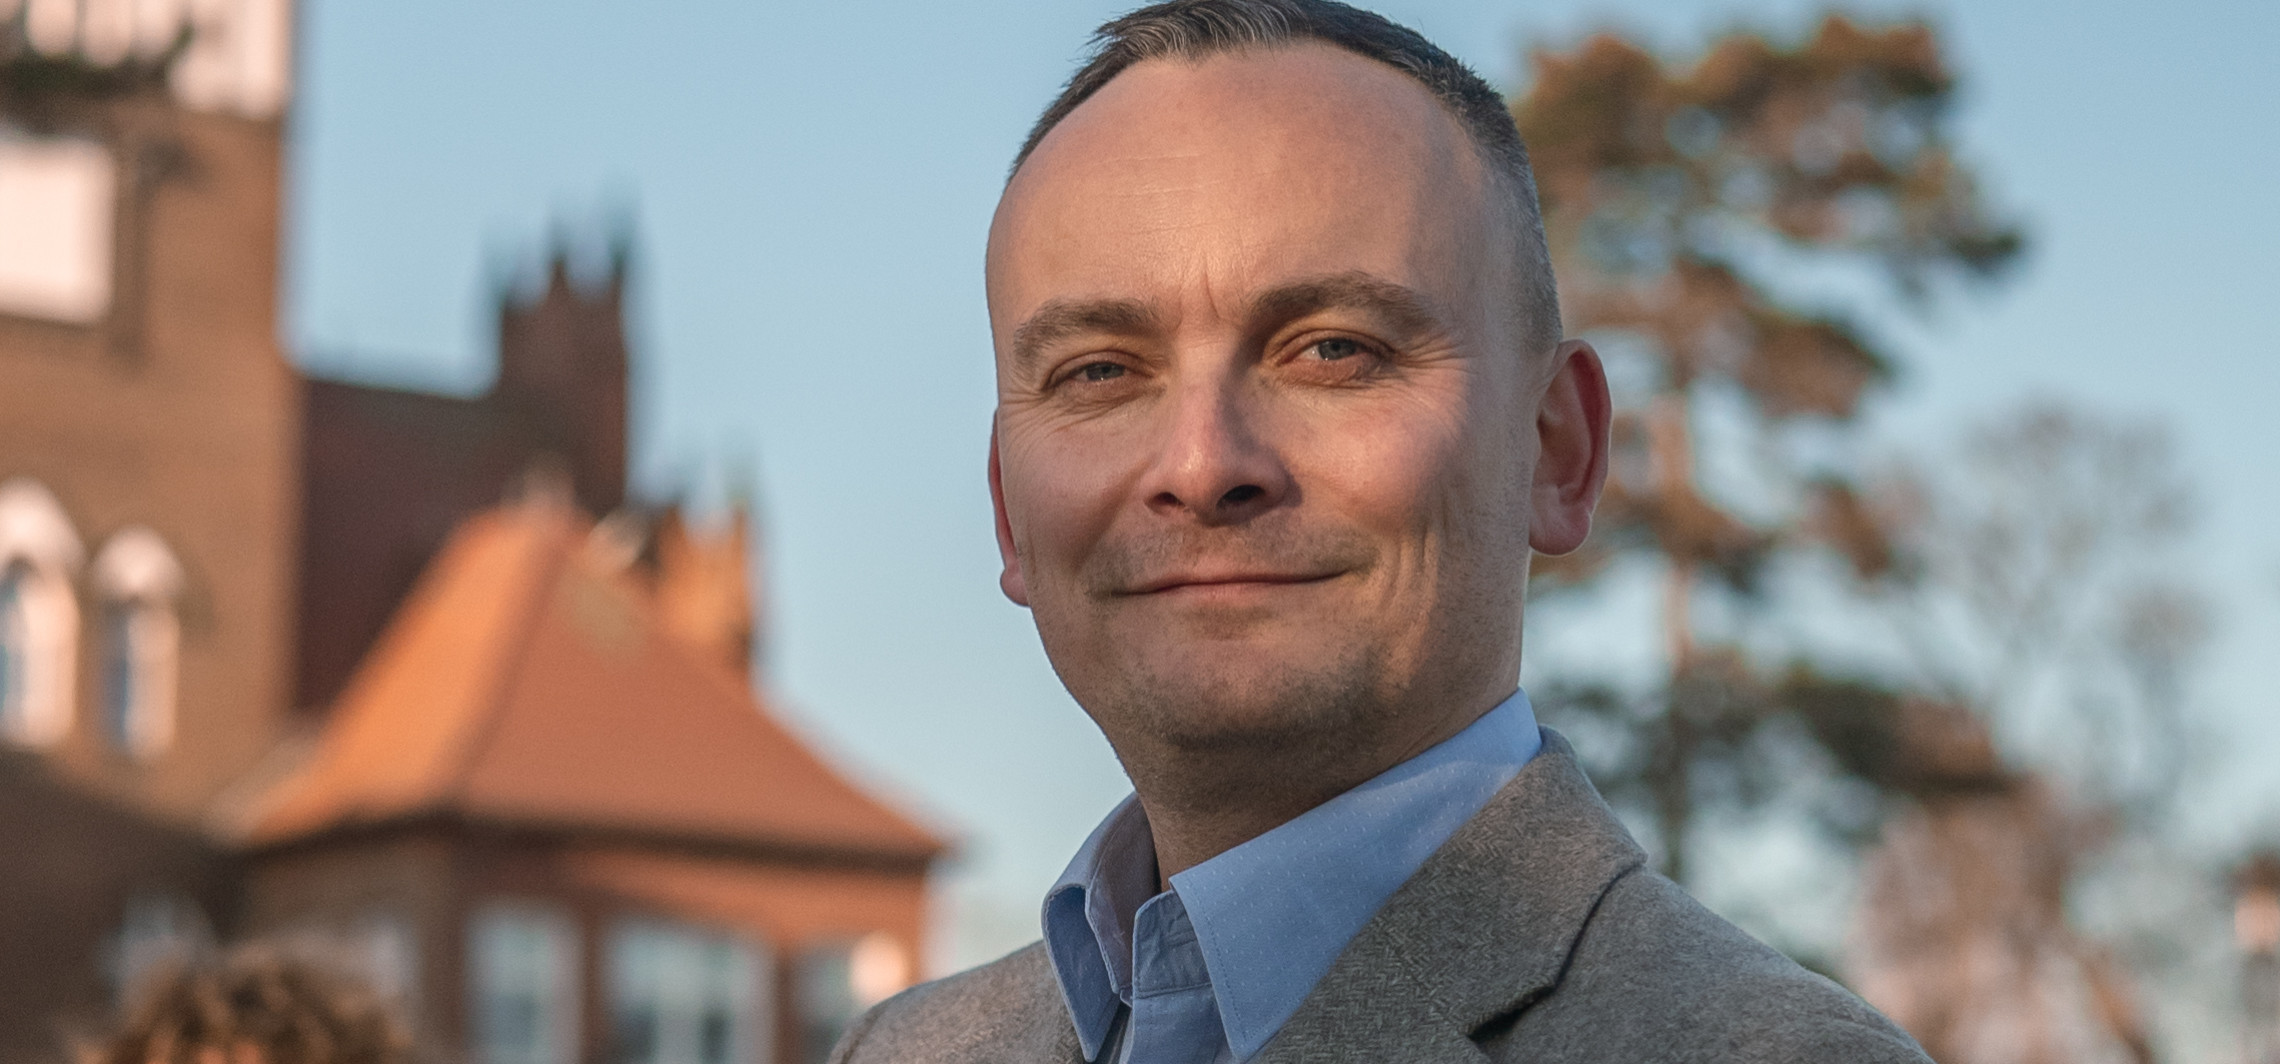 Inowrocław - Arkadiusz Fajok dla Ino.online: Kampania była brudna, ale prawda się obroniła